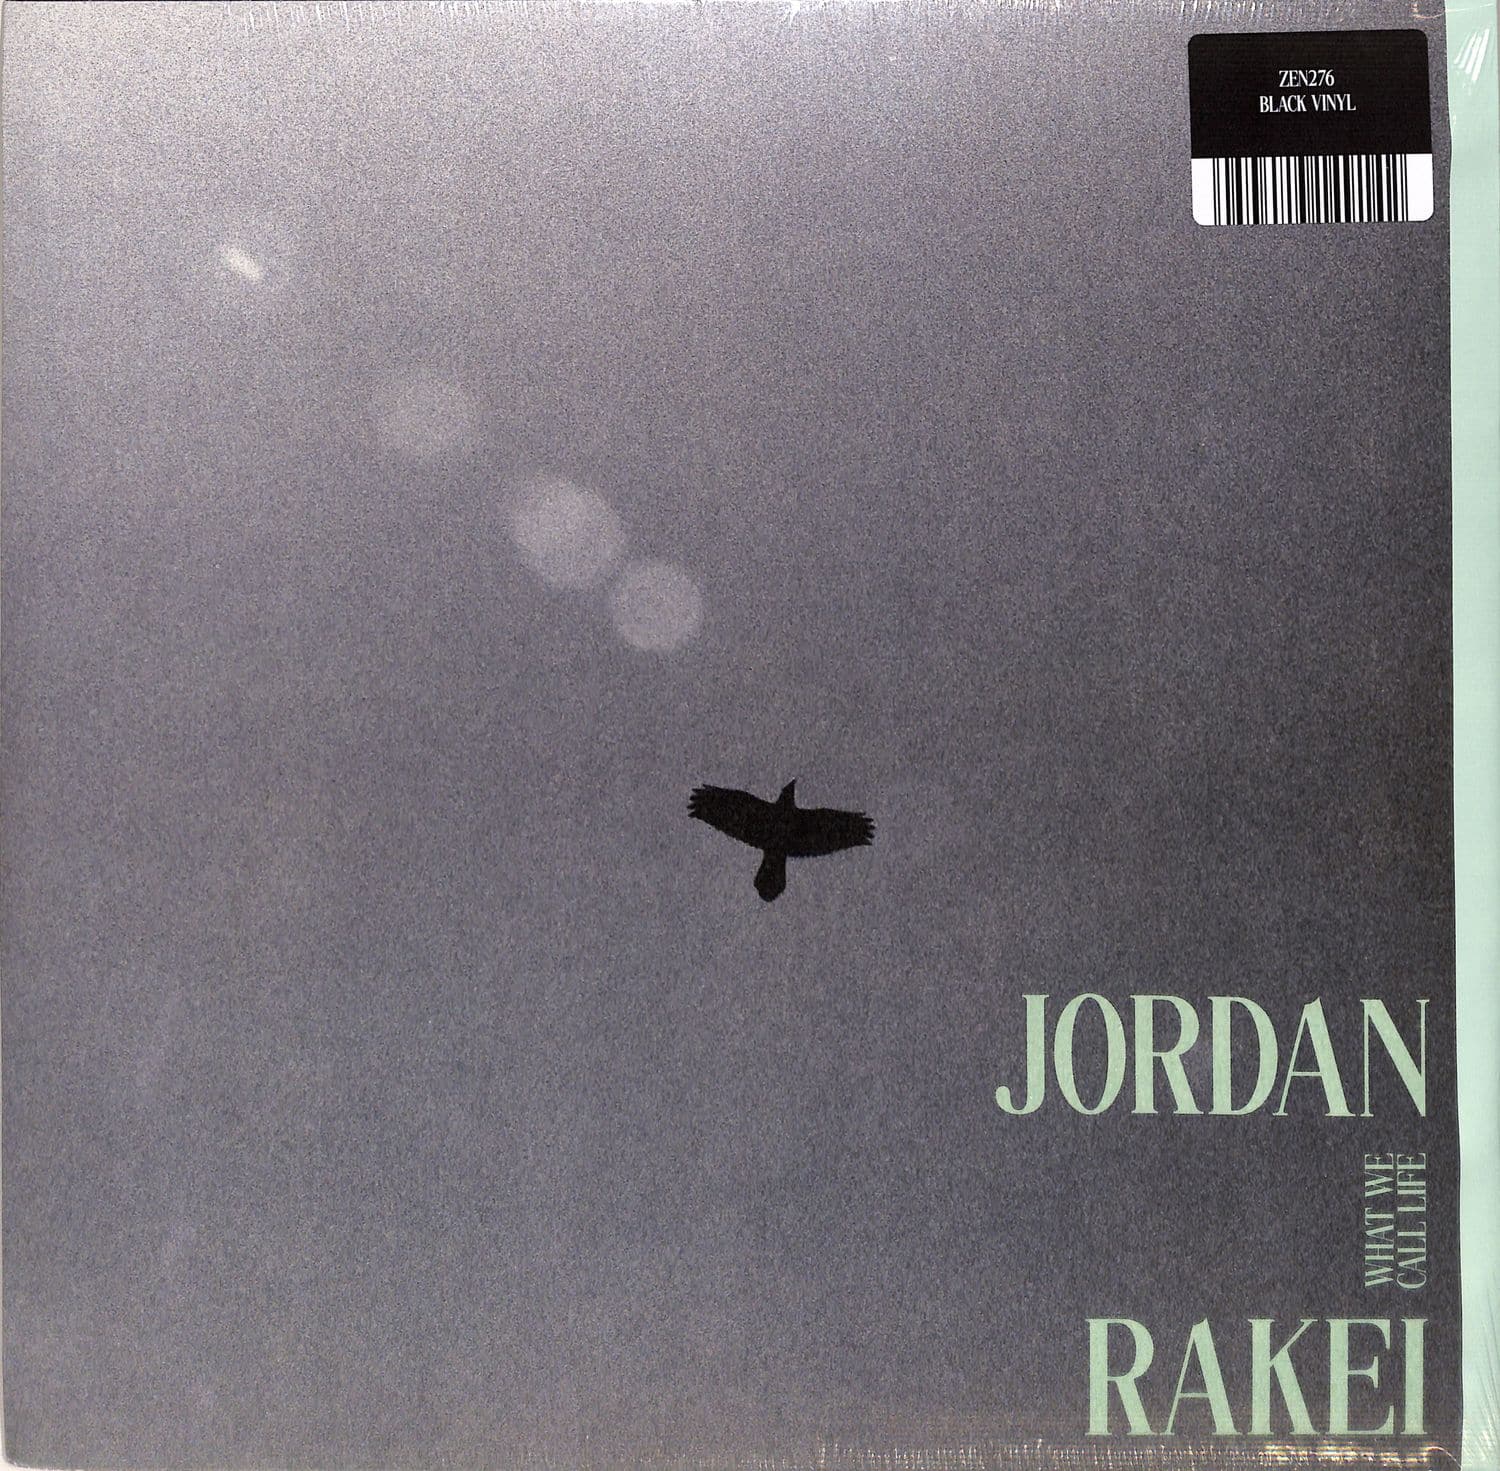 Jordan Rakei - WHAT WE CALL LIFE 